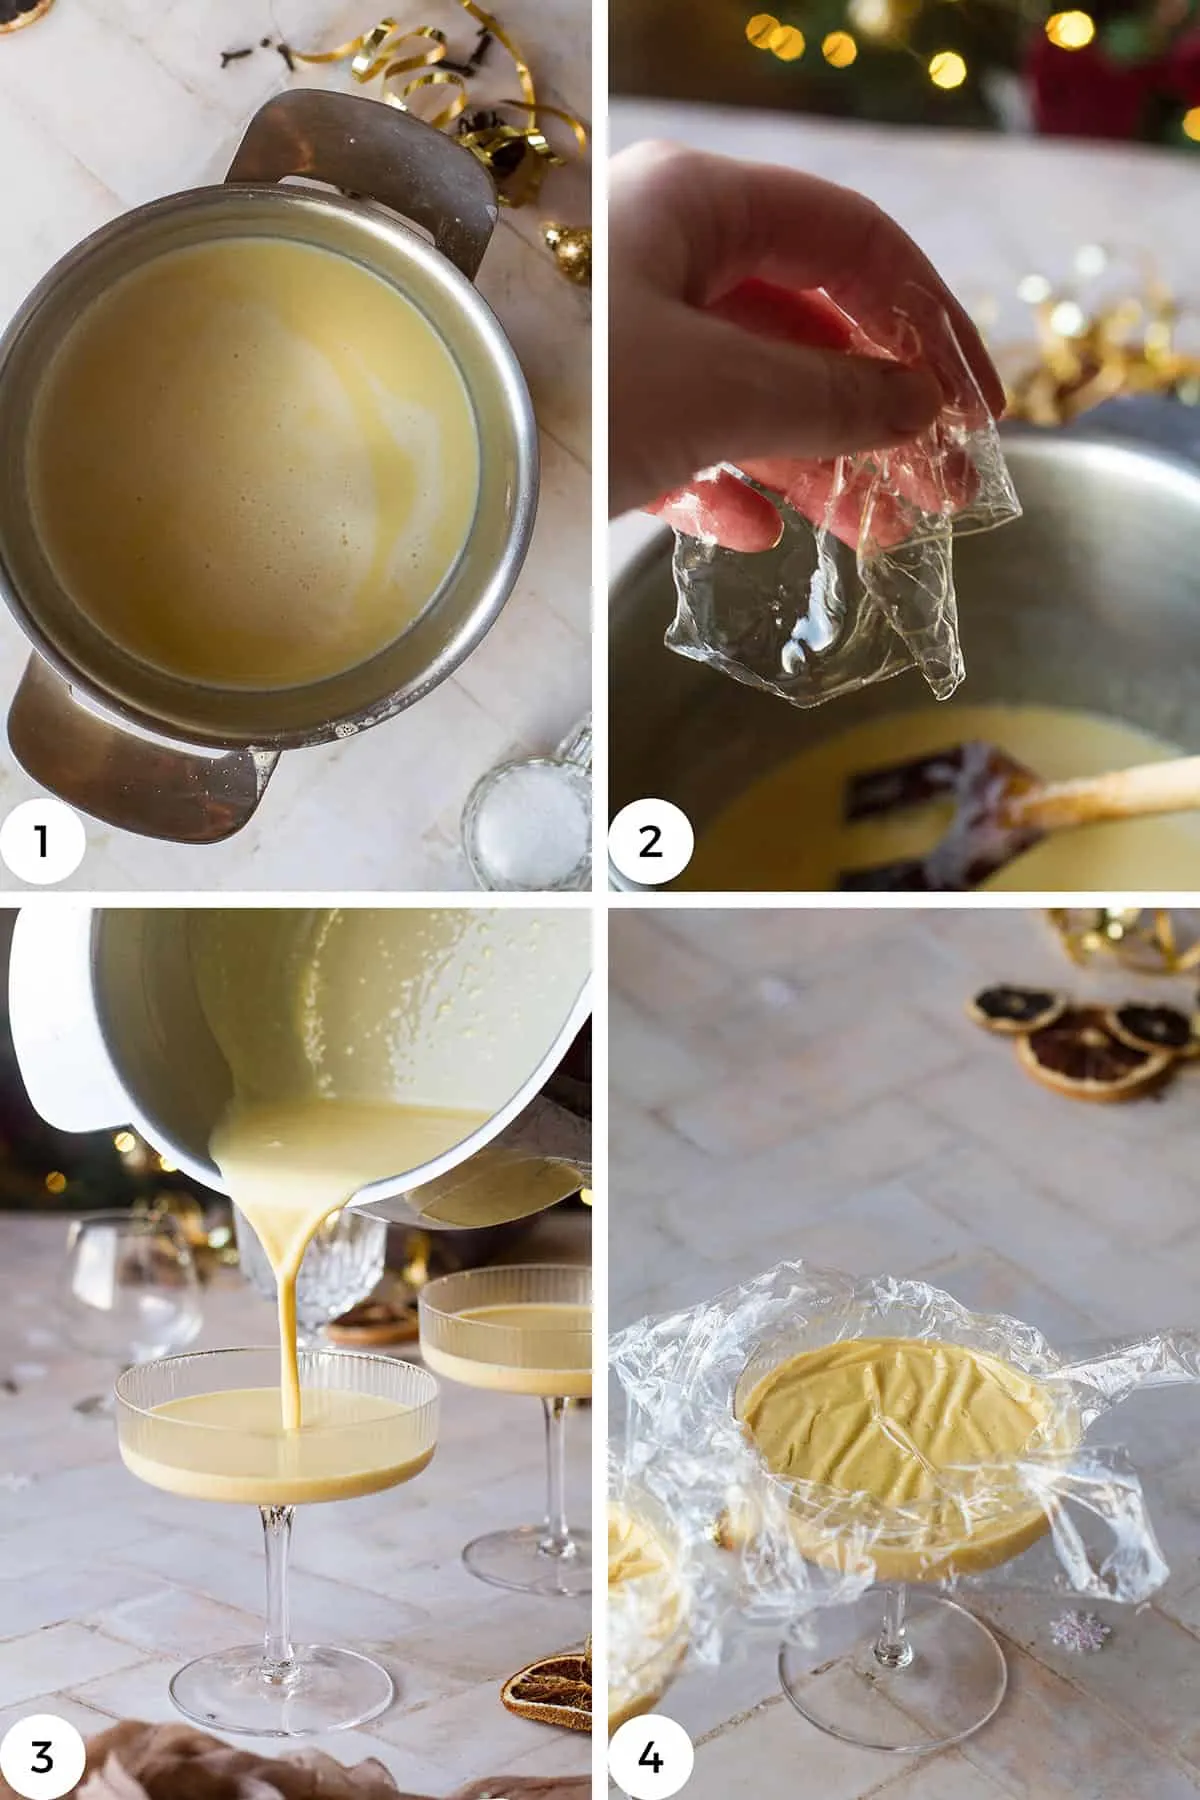 Steps to make the eggnog panna cotta.